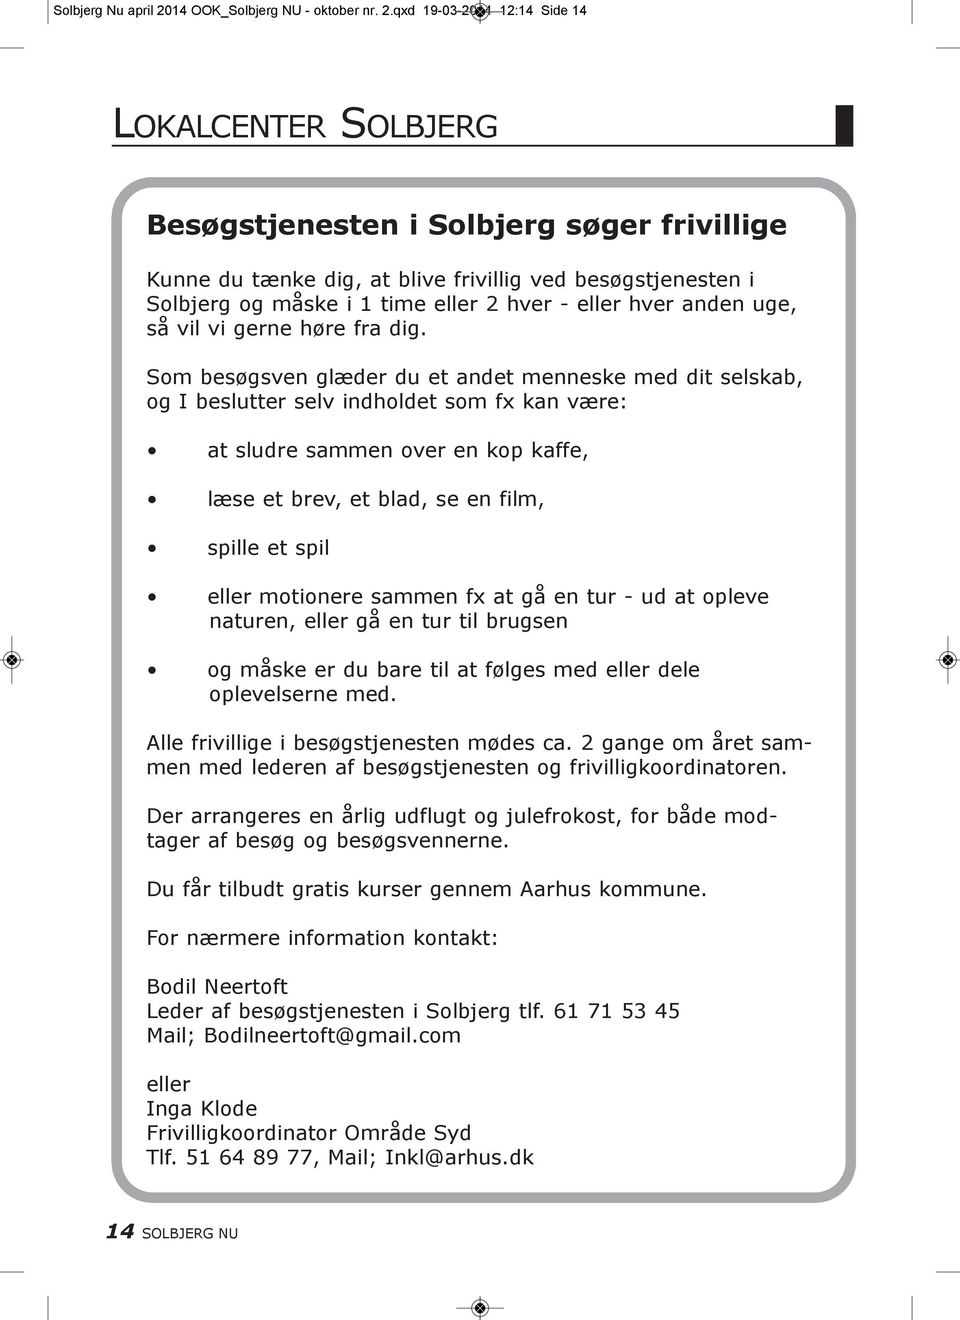 qxd 19-03-2014 12:14 Side 14 LOkALcENtER SOLBJERG Besøgstjenesten i Solbjerg søger frivillige kunne du tænke dig, at blive frivillig ved besøgstjenesten i Solbjerg og måske i 1 time eller 2 hver -